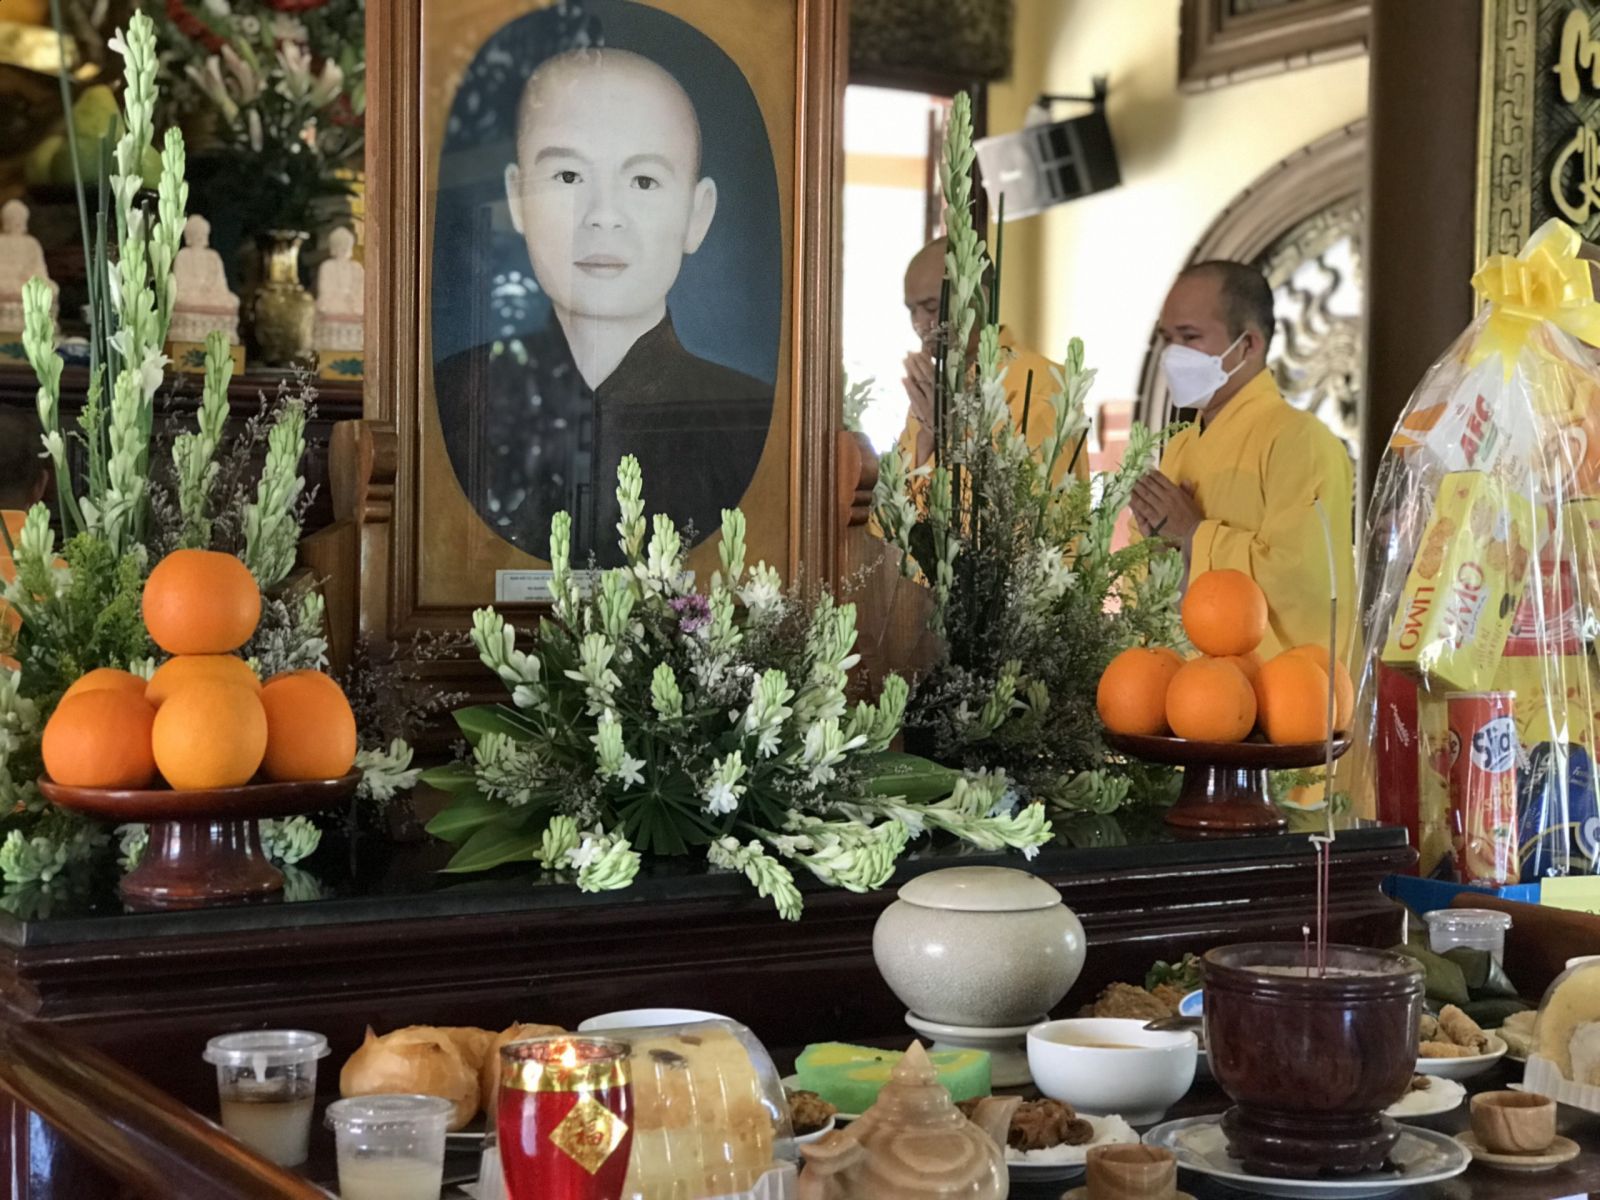 Đăk R'lấp: Lễ húy nhật lần thứ 59 cố Hòa thượng Thích Thông Tịnh và hiệp kị chư vị hương linh tại chùa Hoa Khai